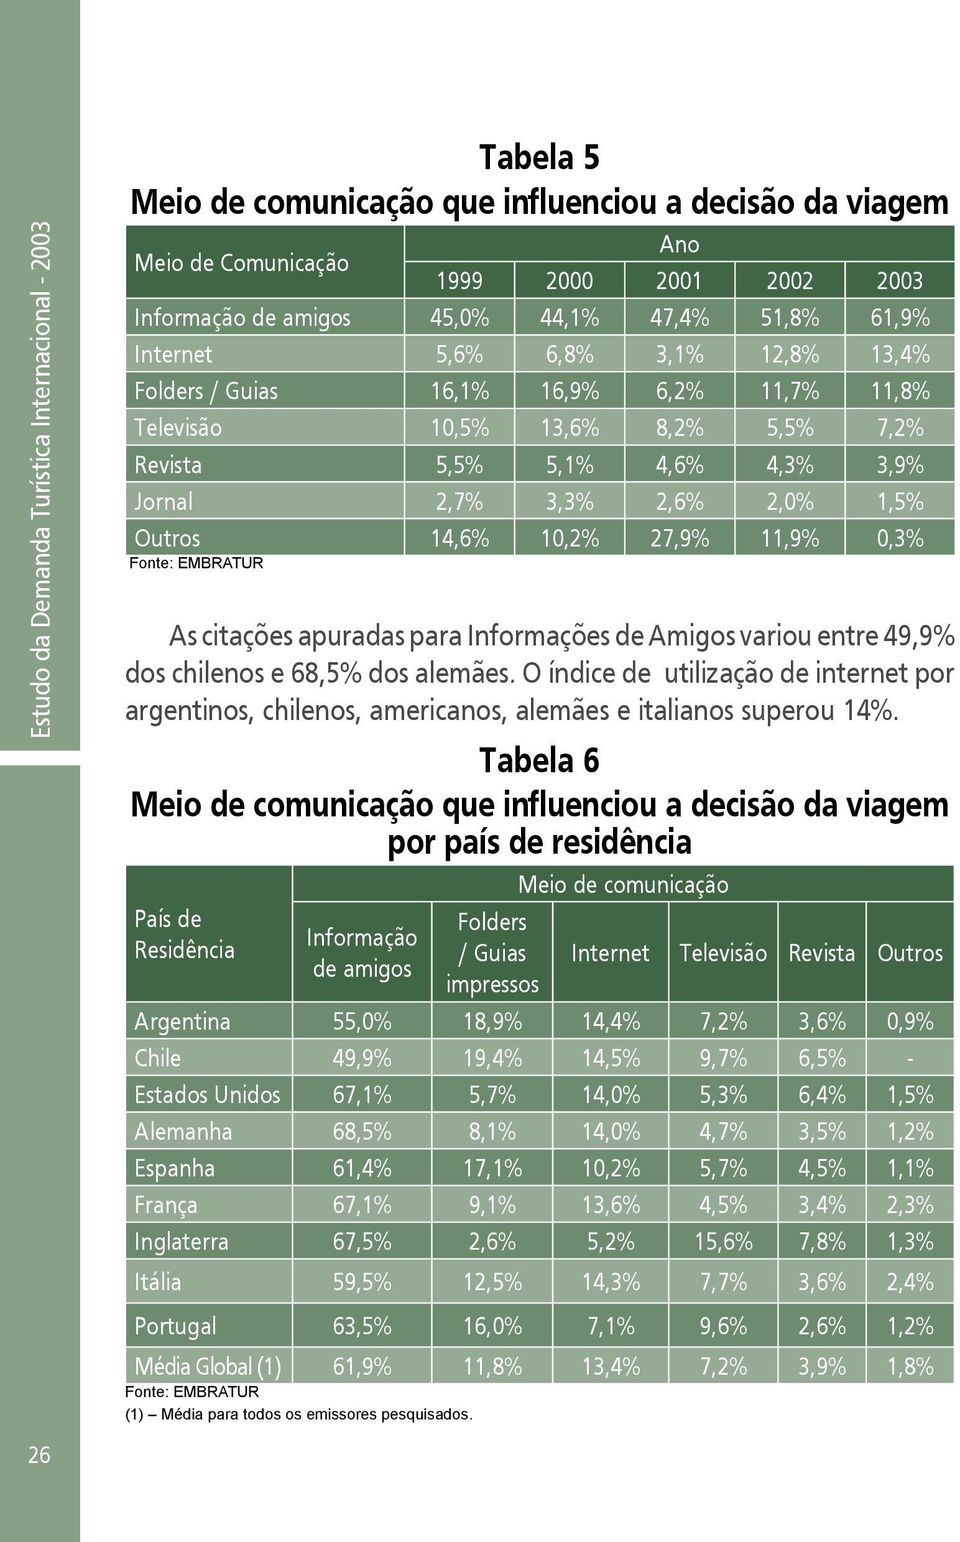 1,5% Outros 14,6% 10,2% 27,9% 11,9% 0,3% As citações apuradas para Informações de Amigos variou entre 49,9% dos chilenos e 68,5% dos alemães.